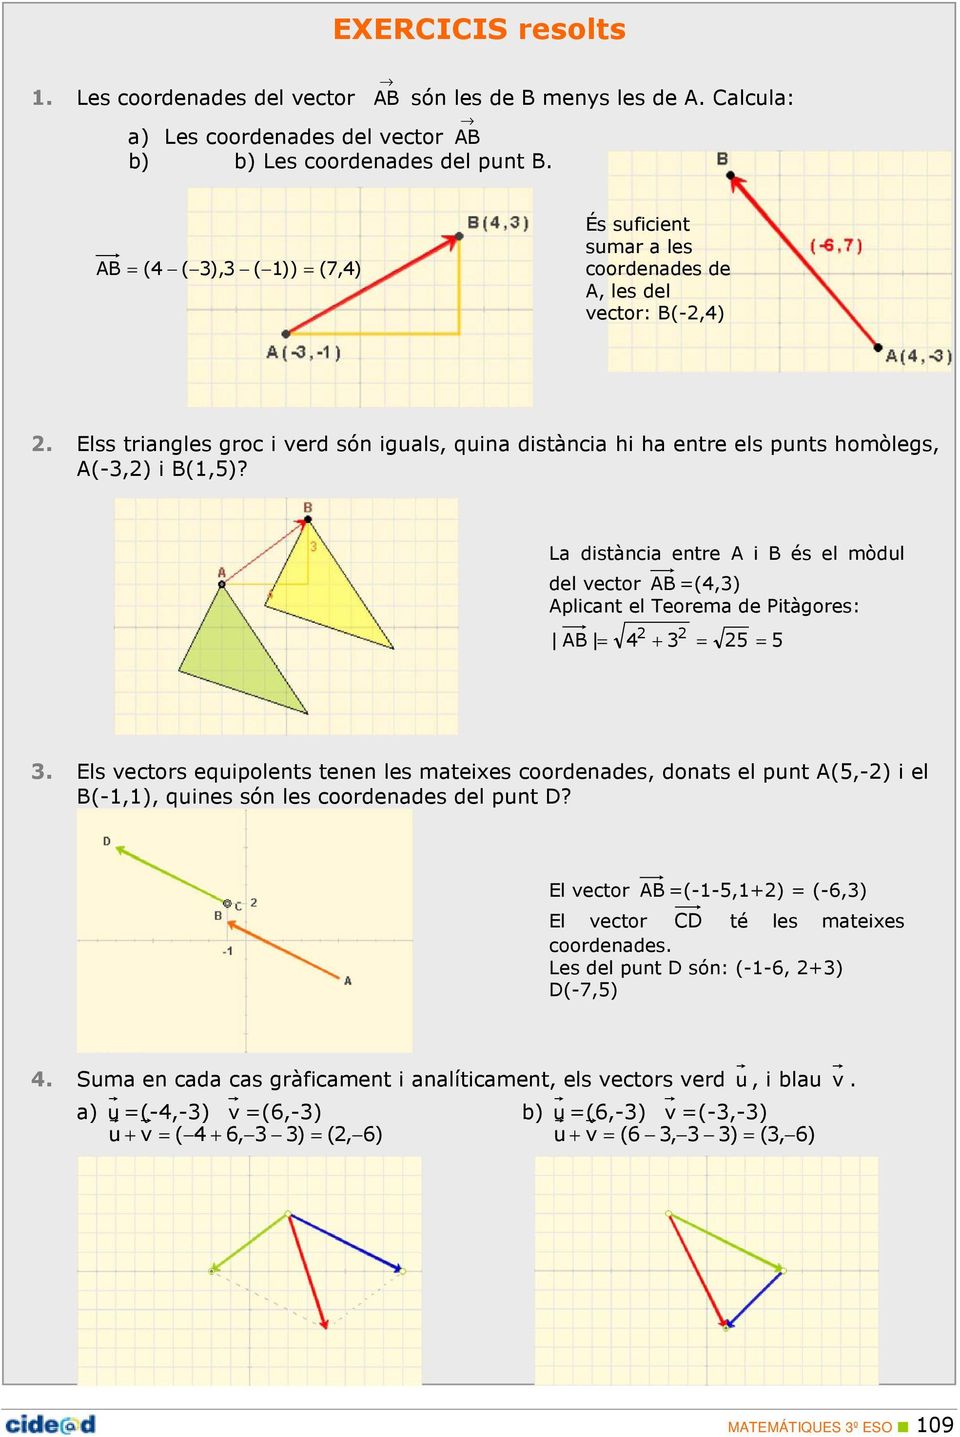 Elss triangles groc i verd són iguals, quina distància hi ha entre els punts homòlegs, A(-3,2) i B(1,5)?